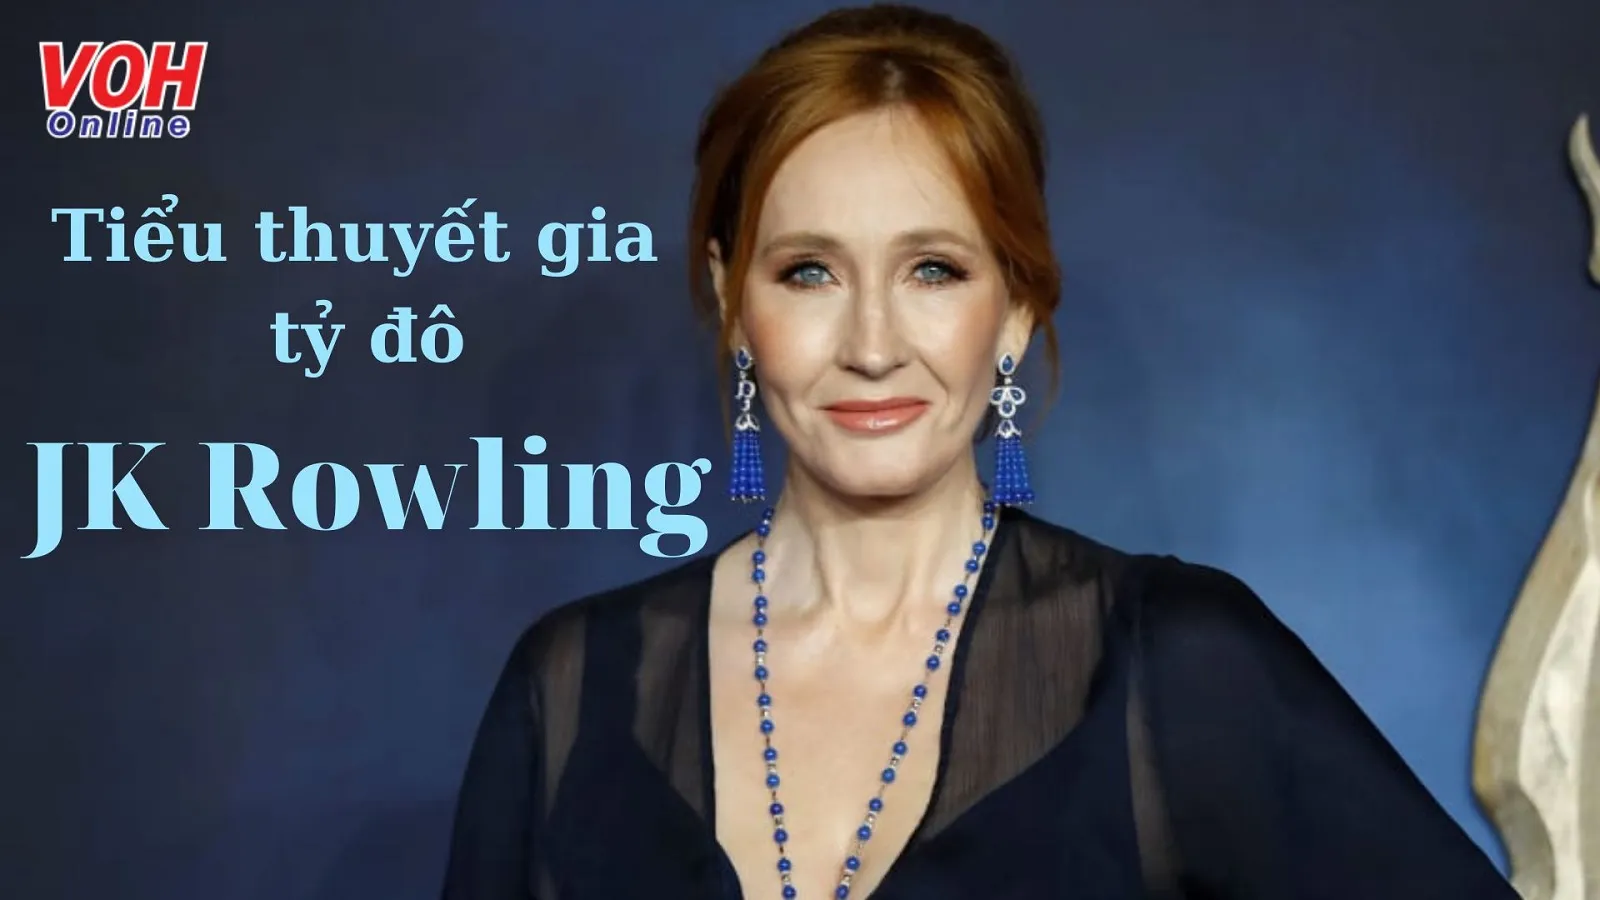 J.K. Rowling là ai? Những câu nói nổi tiếng của tác giả J. K. Rowling